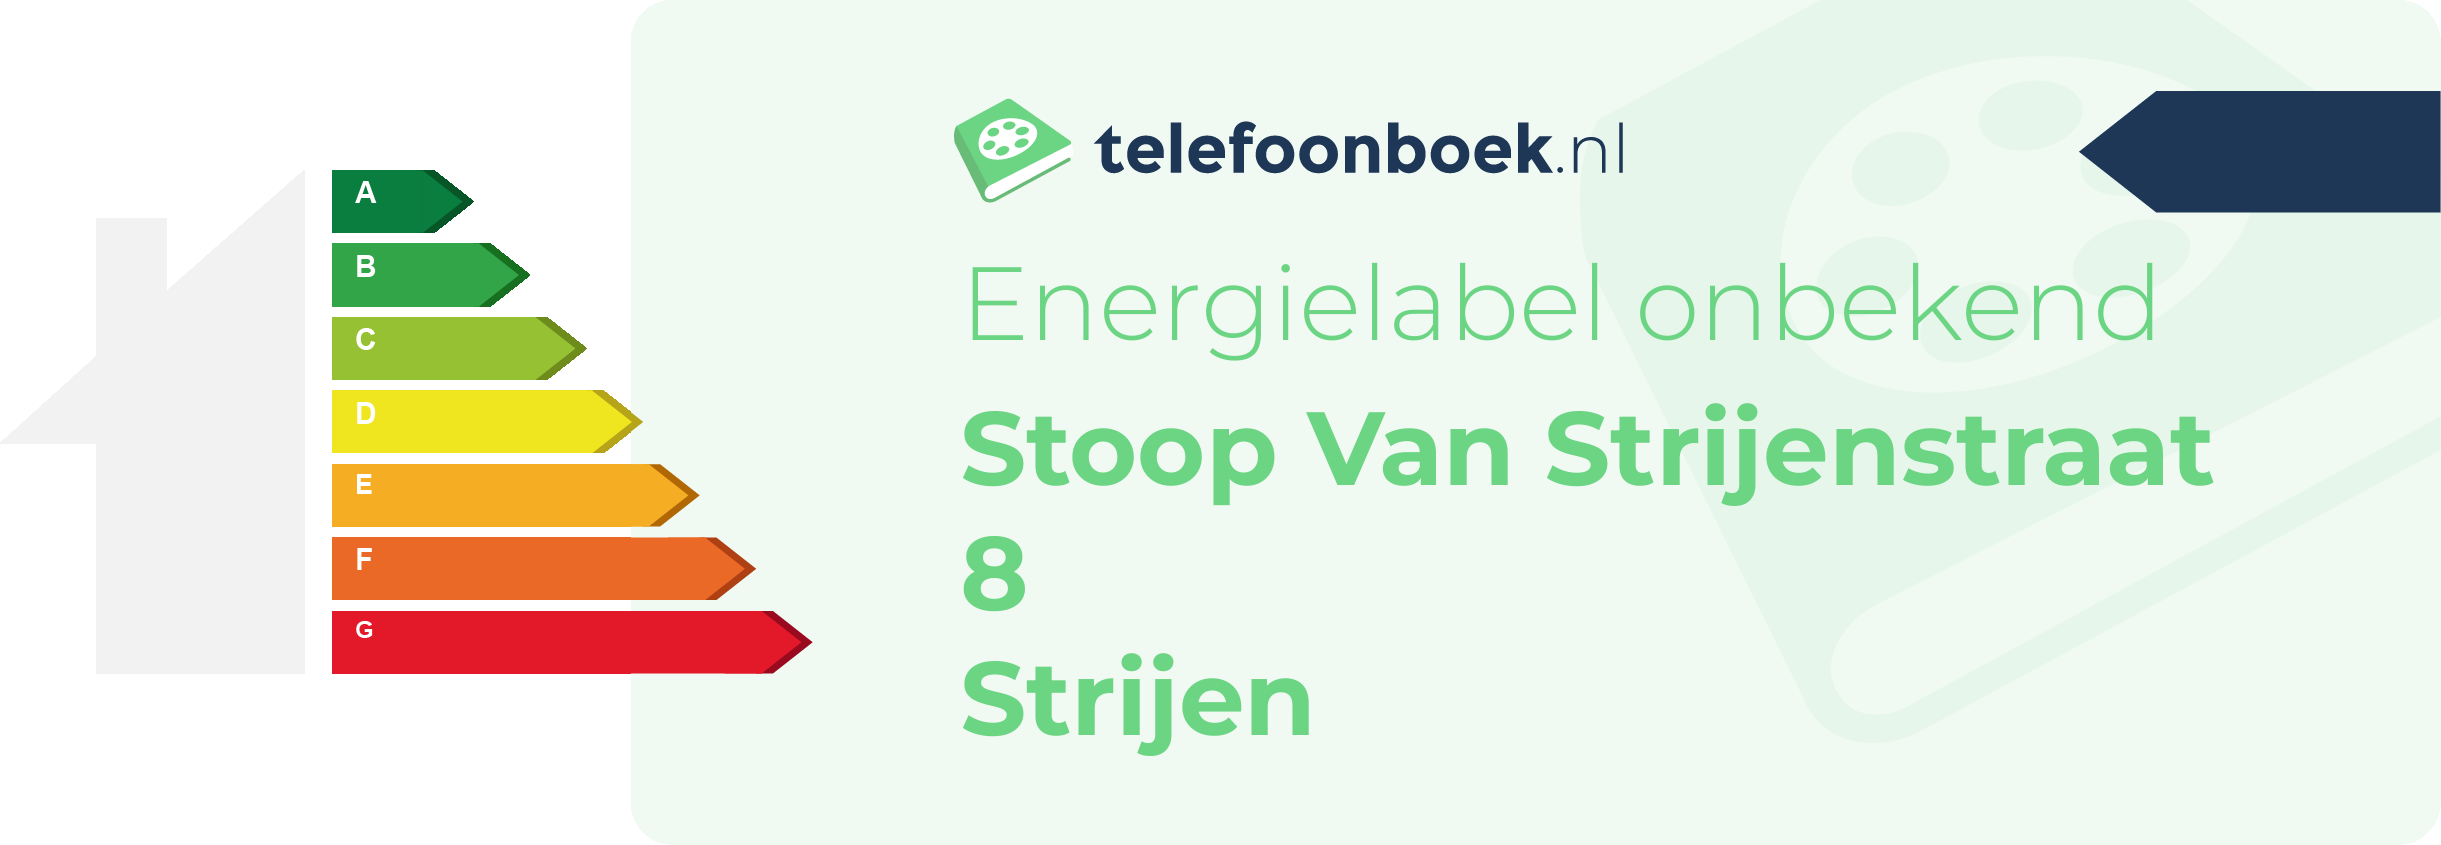 Energielabel Stoop Van Strijenstraat 8 Strijen